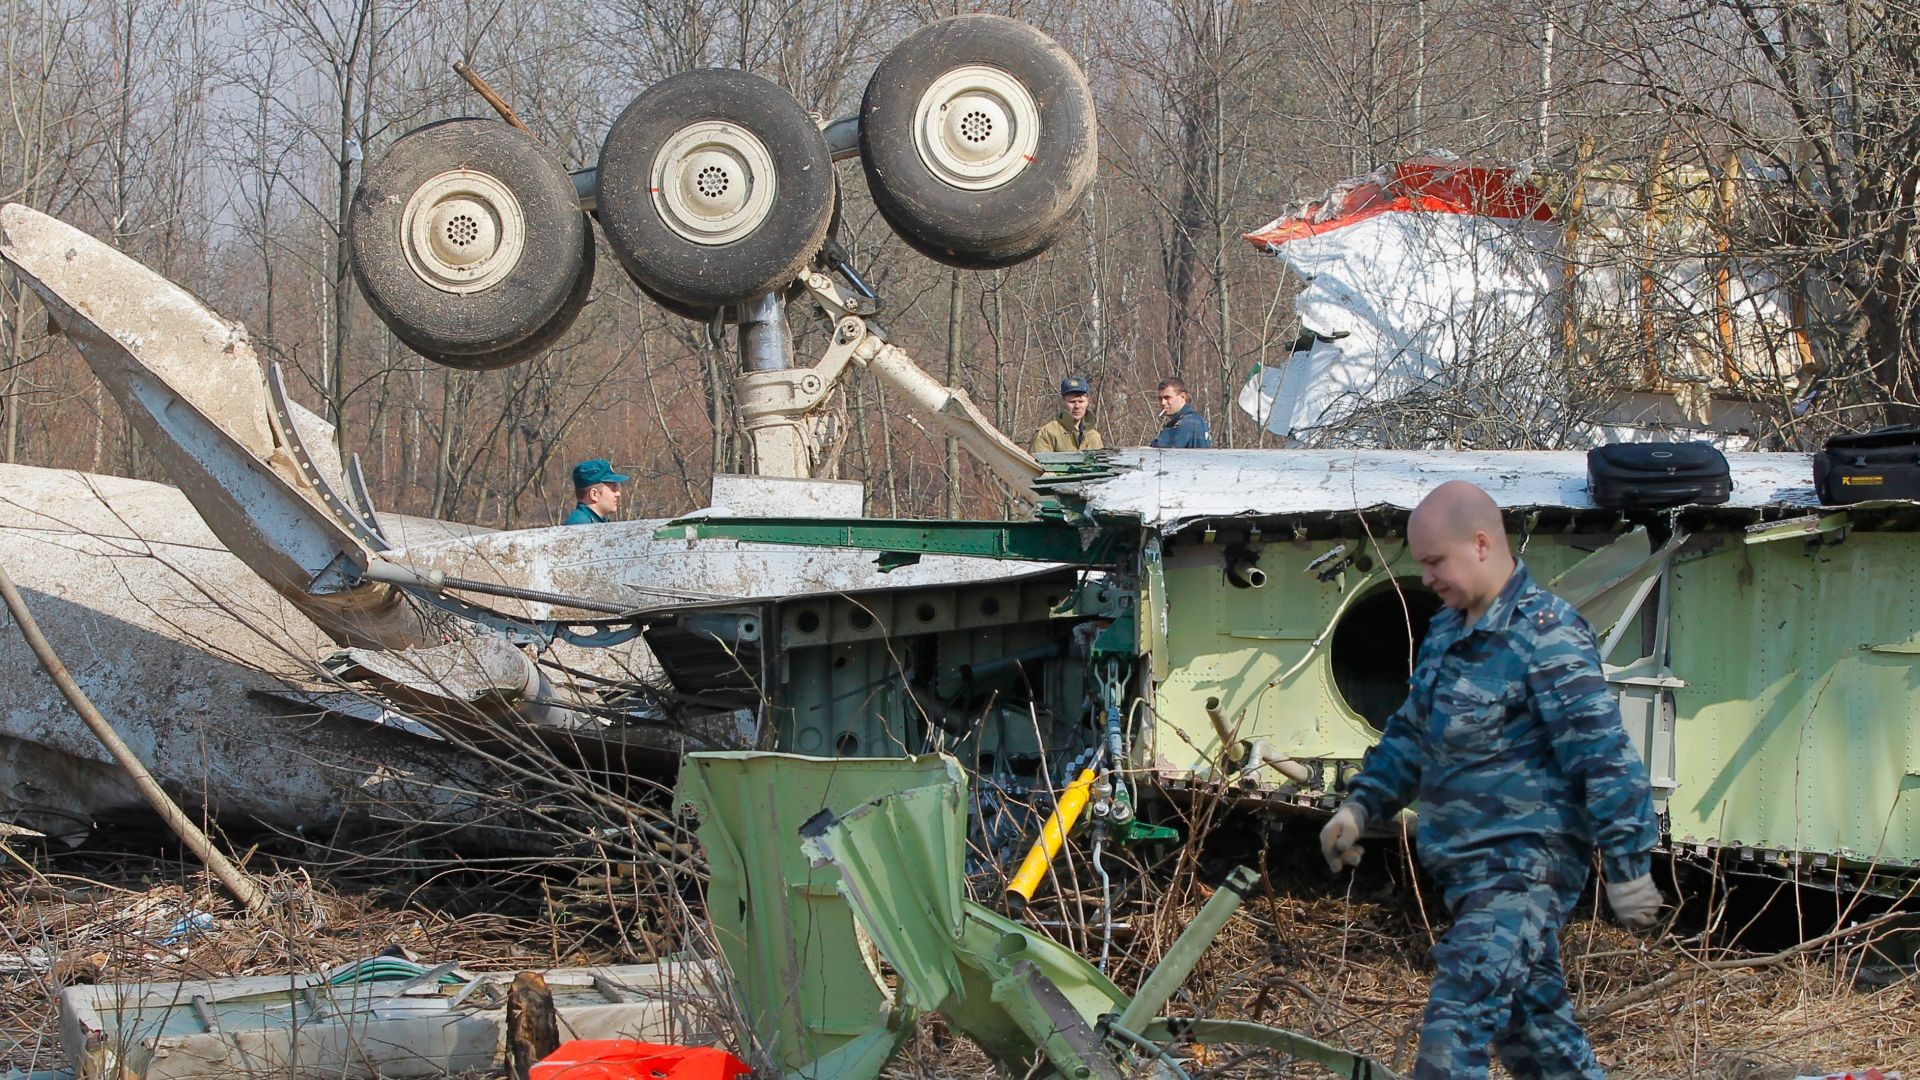 Поляки разобьют старый Ту-154 о берёзу, чтобы расследовать гибель Качинского